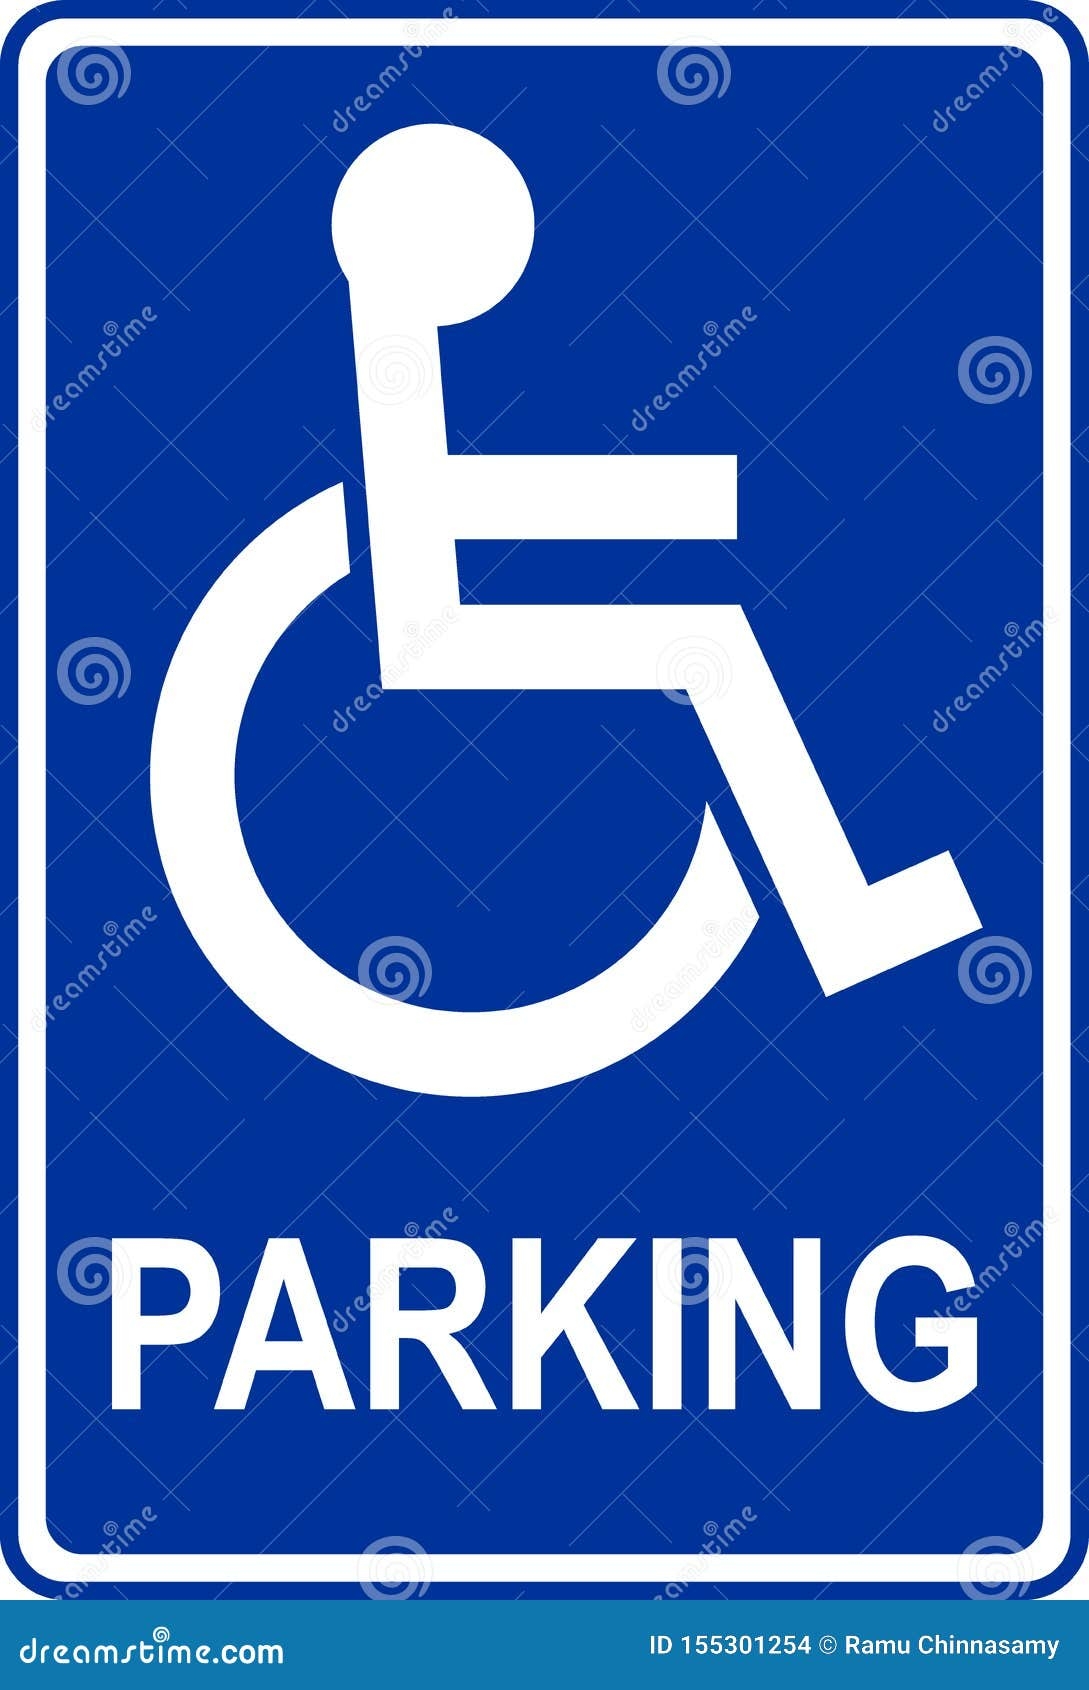 Handicap Parking Sign Stock Illustrations 2 649 Handicap Parking Sign Stock Illustrations Vectors Clipart Dreamstime